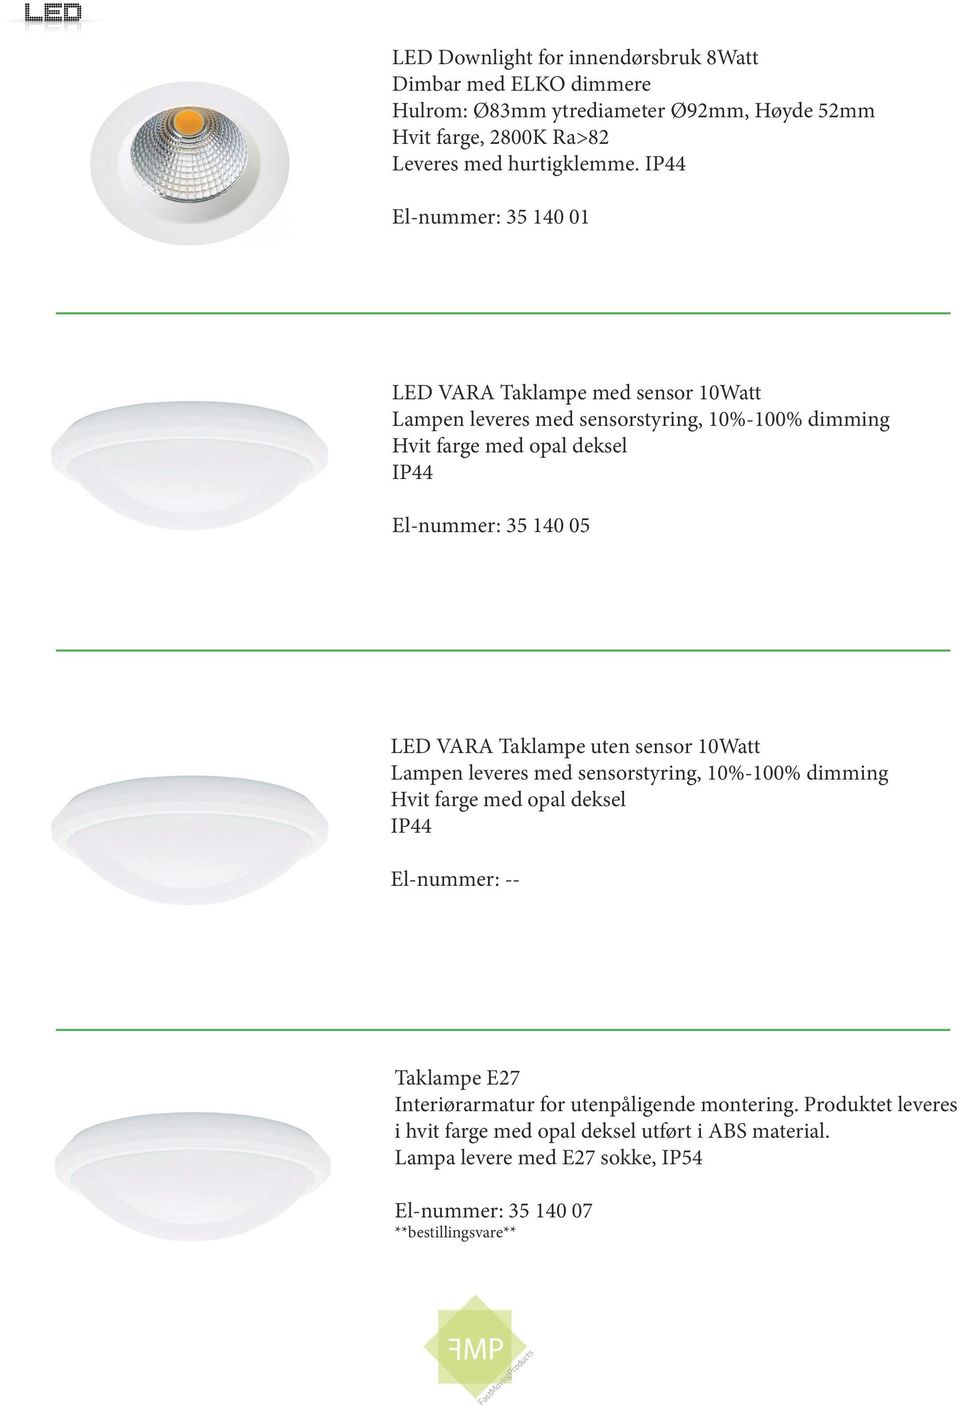 35 140 05 LED VARA Taklampe uten sensor 10Watt Lampen leveres med sensorstyring, 10%-100% dimming Hvit farge med opal deksel IP44 Taklampe E27